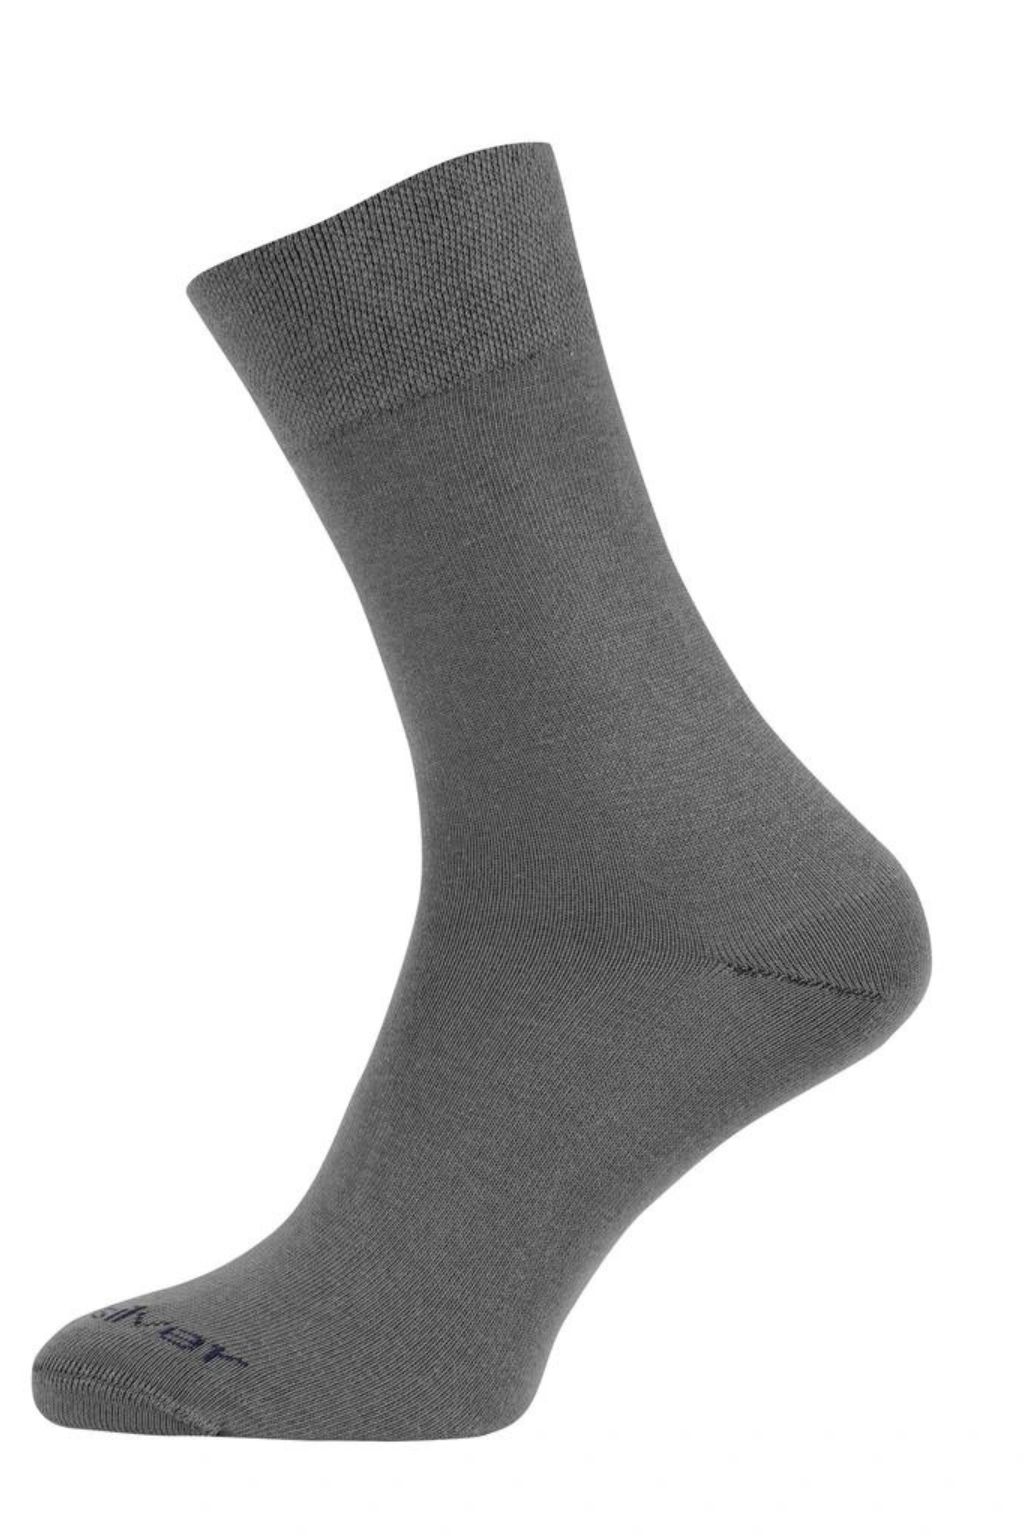 Levně nanosilver® Společenské ponožky se stříbrem nanosilver NEW šedé Velikost: L 43/46